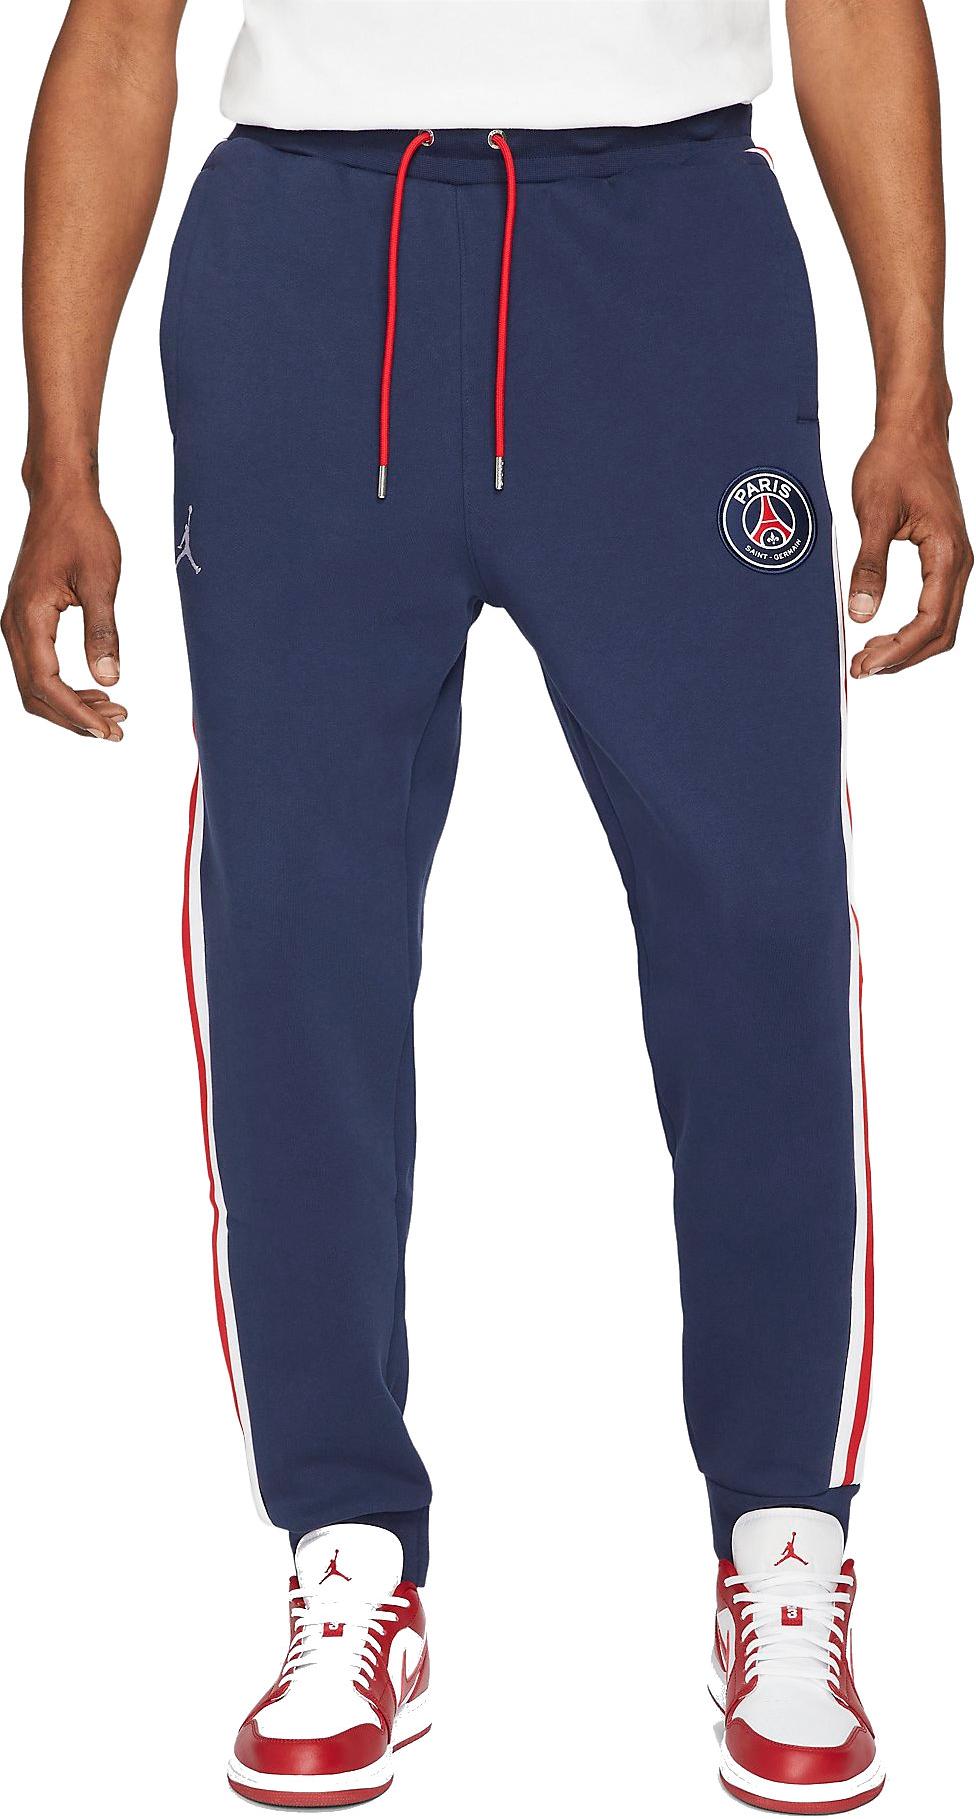 Pantaloni Jordan Paris Saint-Germain Men s Fleece Pants